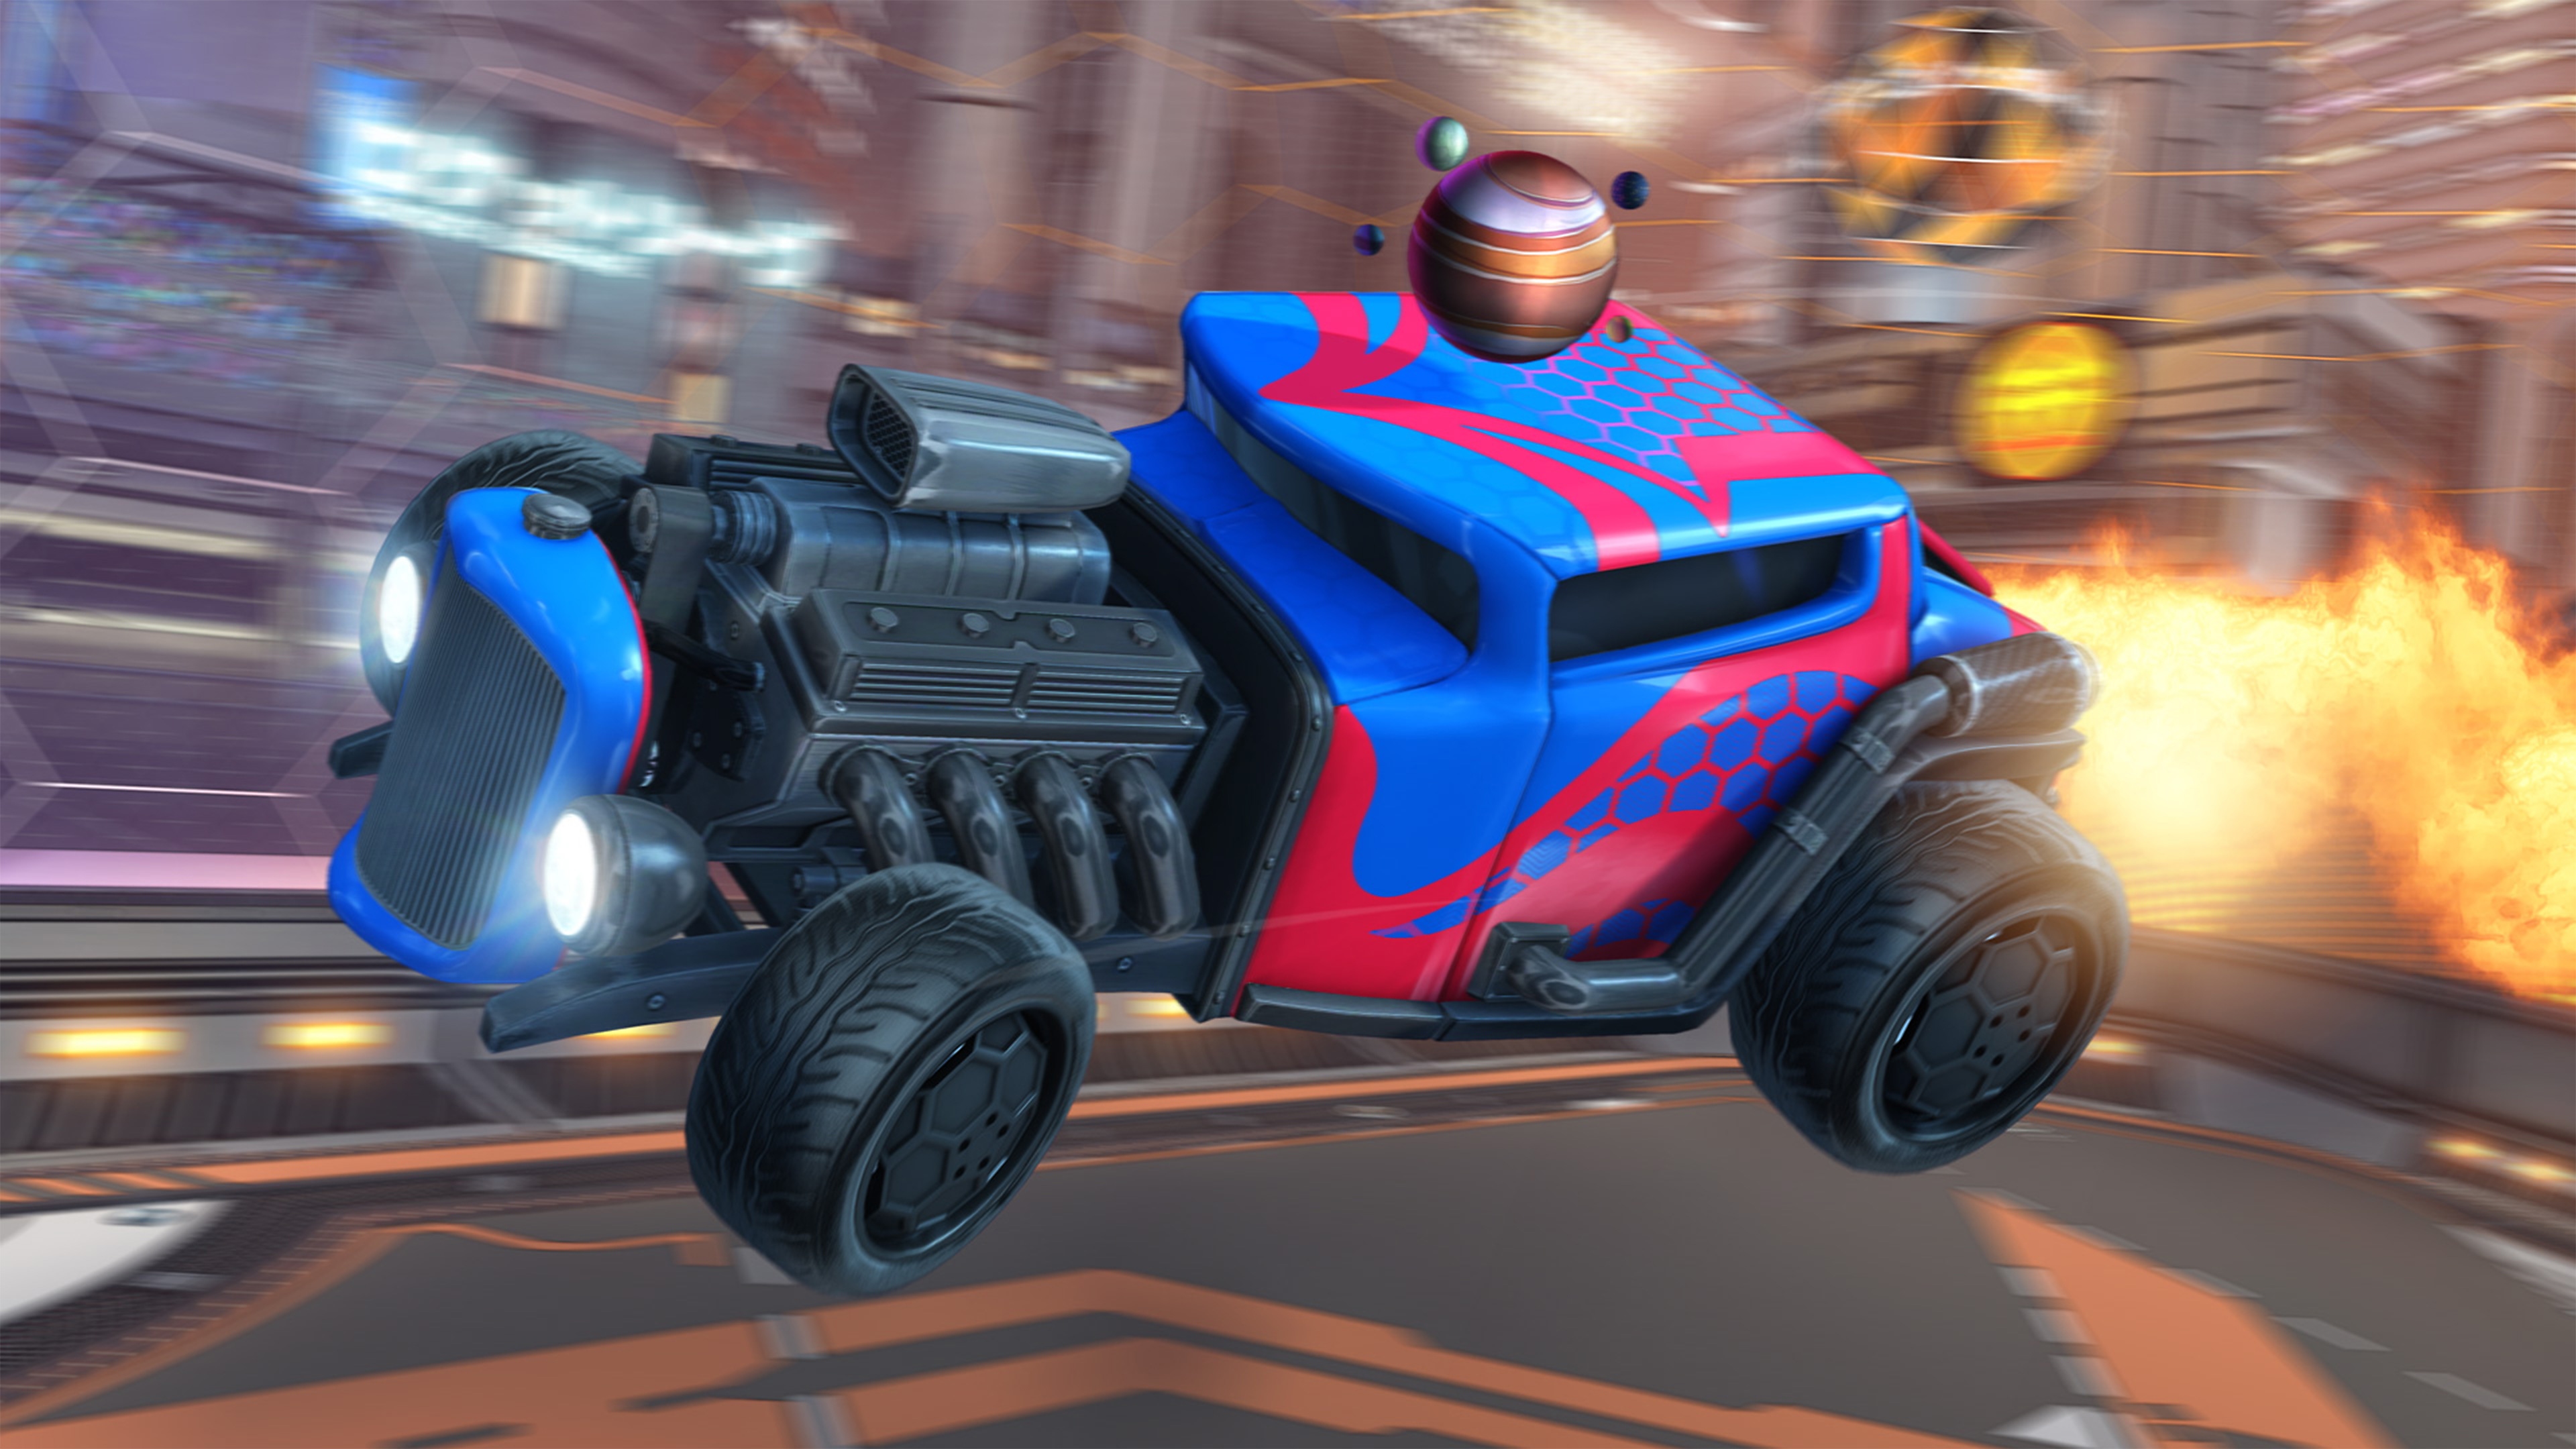 Rocket League – Captură de ecran cu o mașină hot-rod cu motorul la vedere, vopsit în roșu și albastru